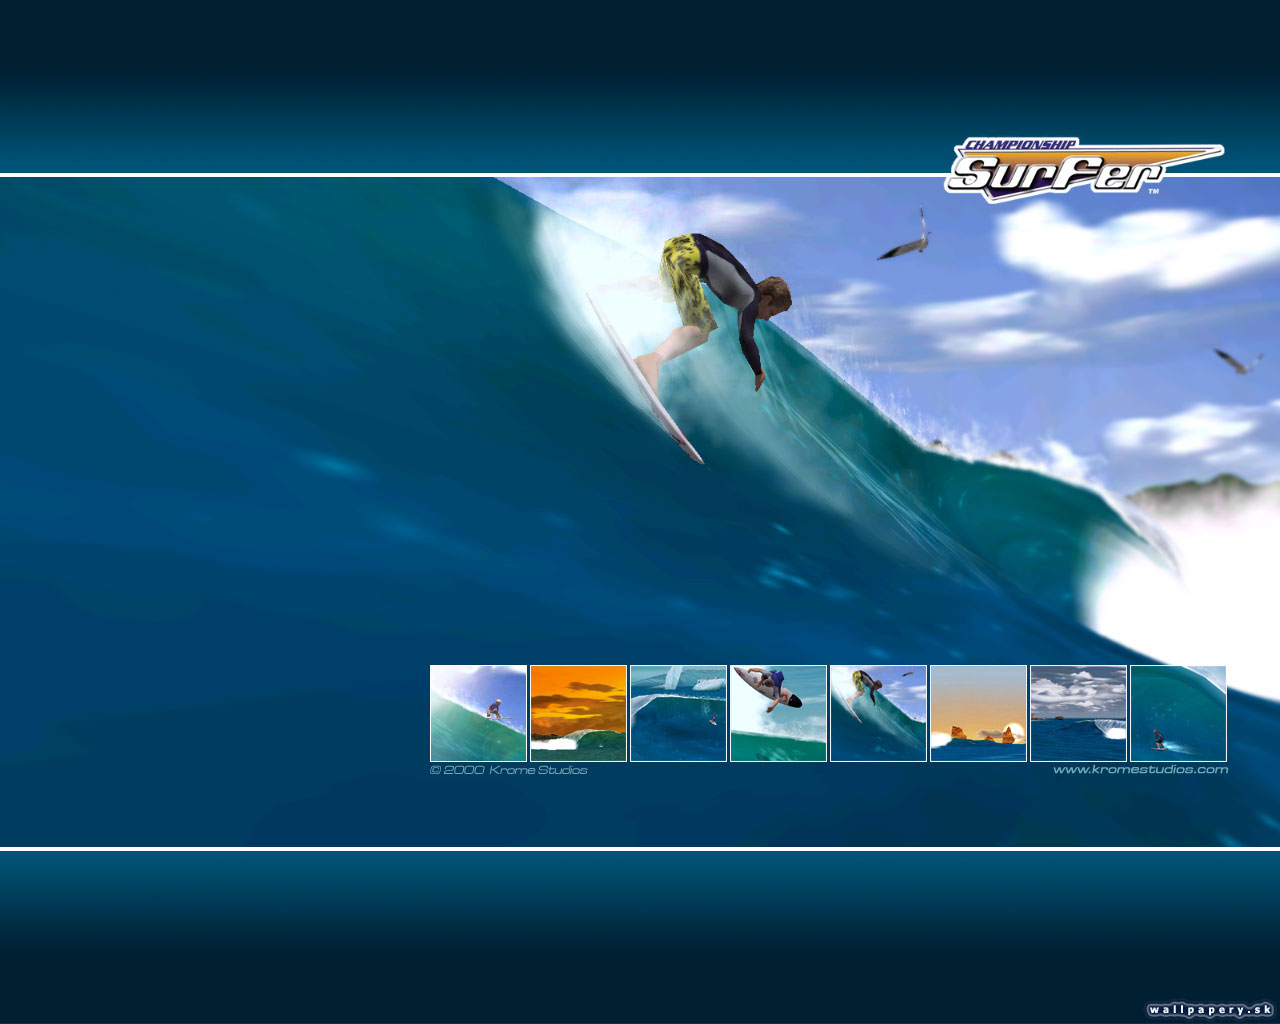 Championship Surfer - wallpaper 2